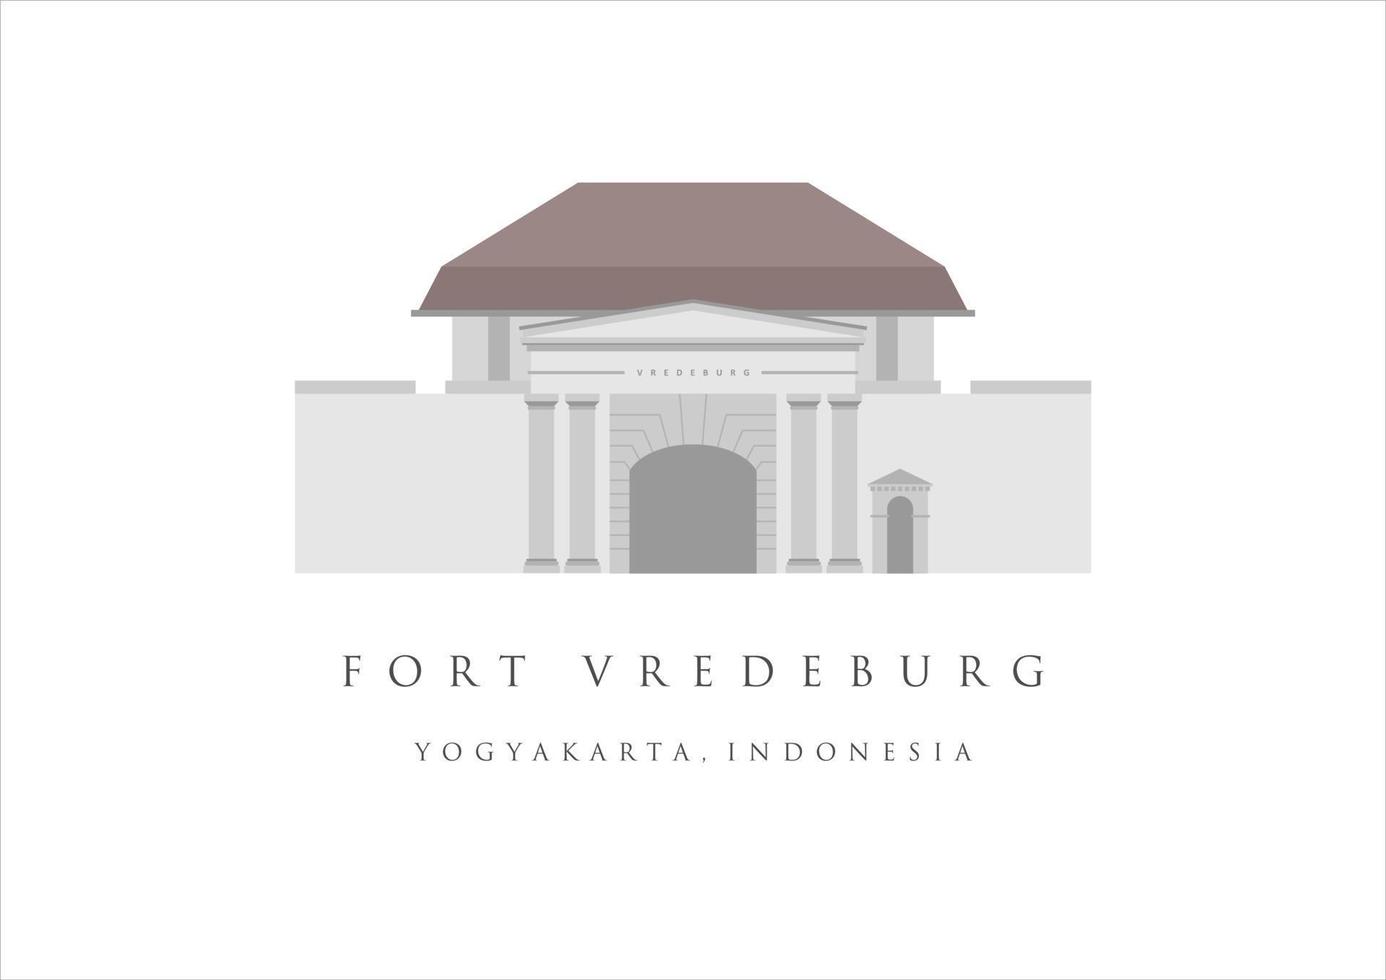 fort vredeburg of benteng vredeburg mijlpaal gebouw van yogakarta. erfgoed toerisme van Indonesië. jogjakarta oud gebouw vector illustratie